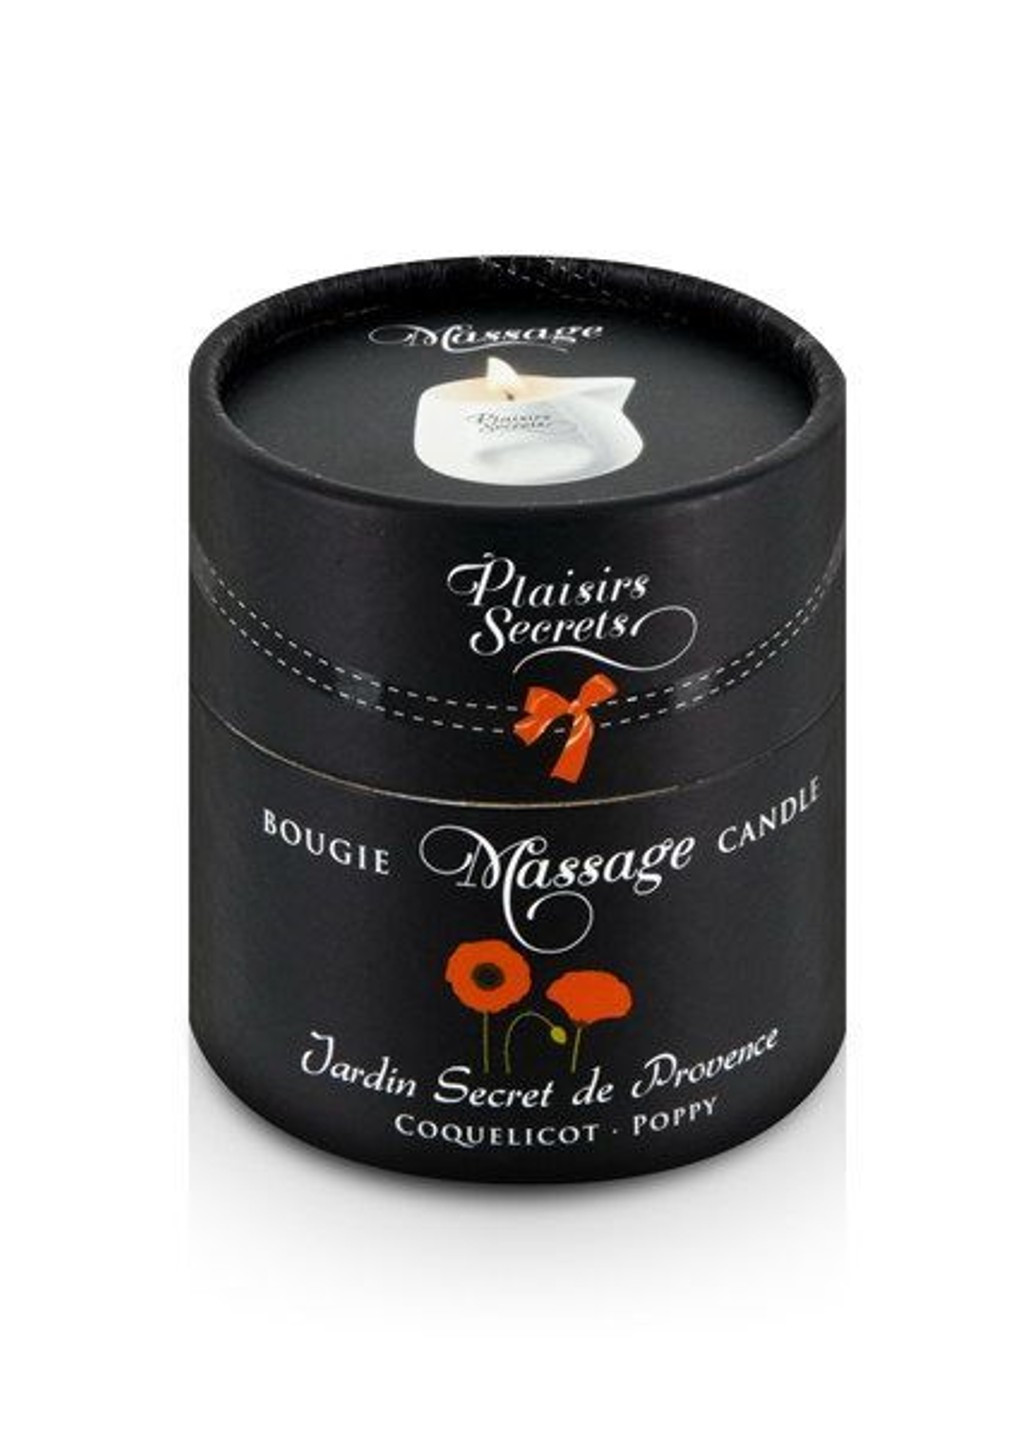 Массажная свеча Poppy (80 мл) подарочная упаковка, керамический сосуд Plaisirs Secrets (257203911)